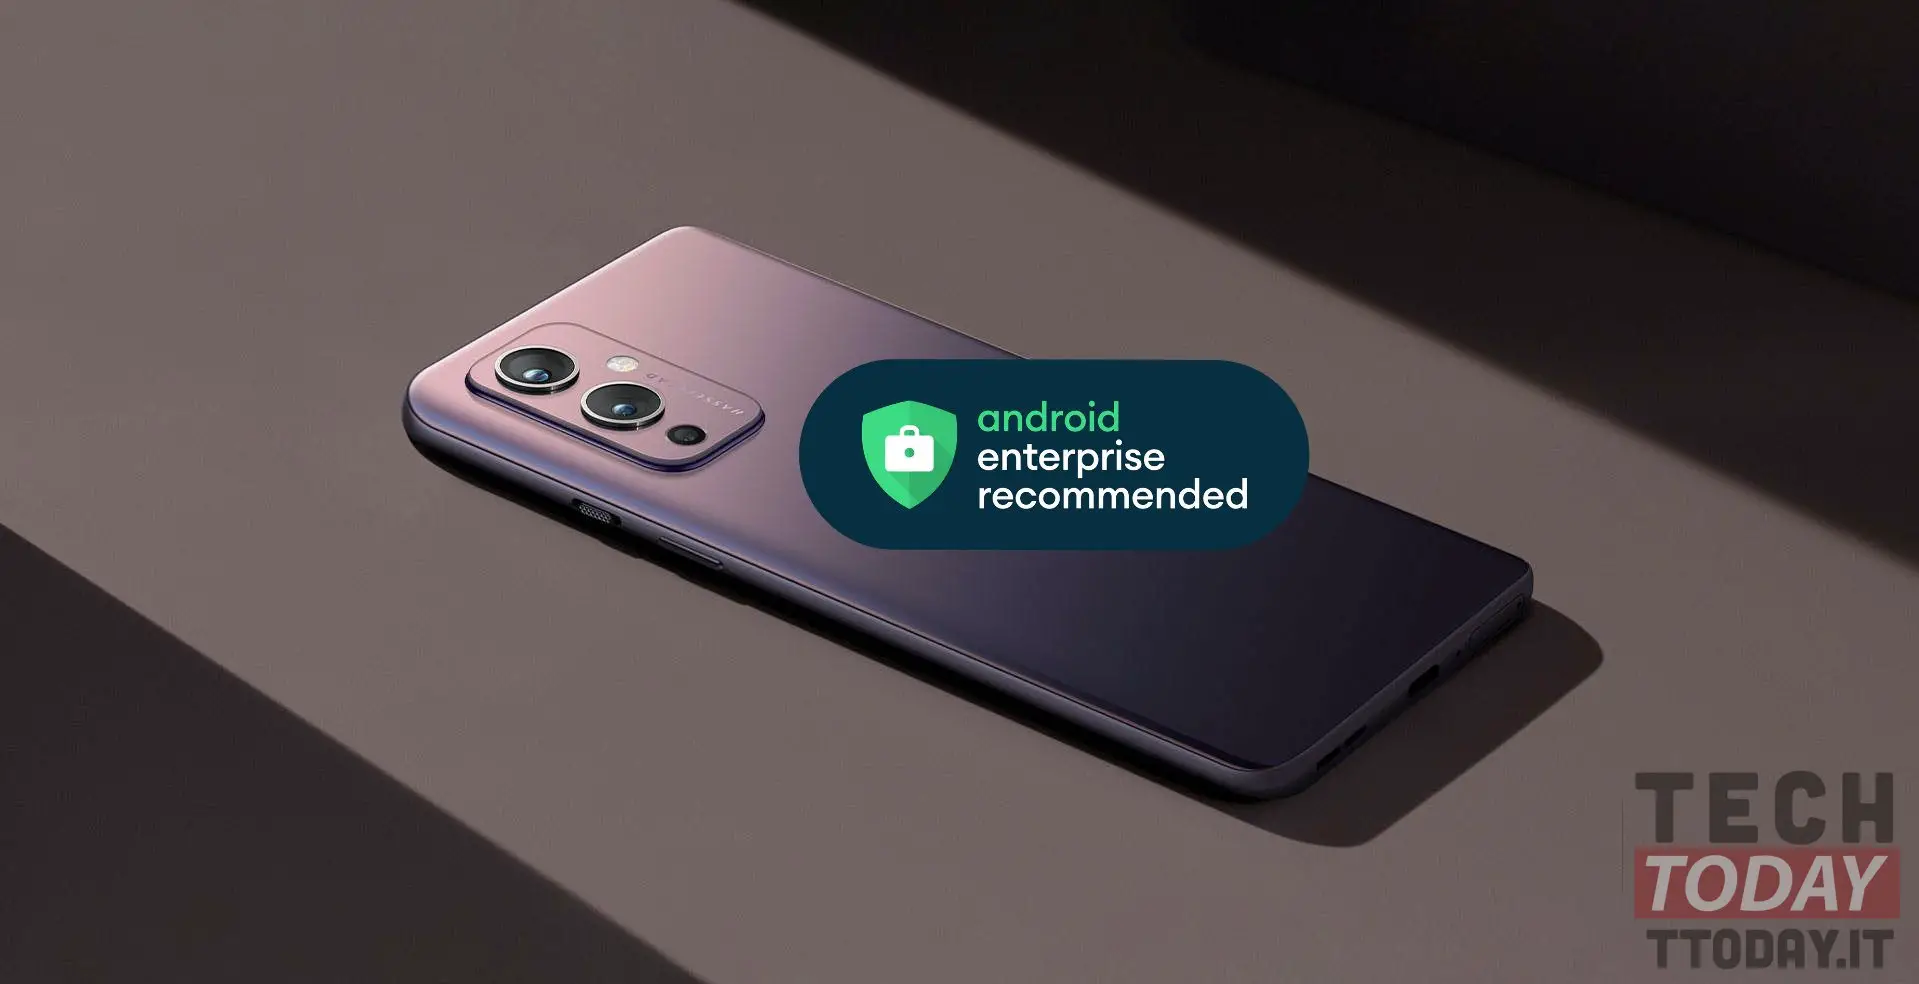 oneplus 9 é recomendado para empresas android certificadas